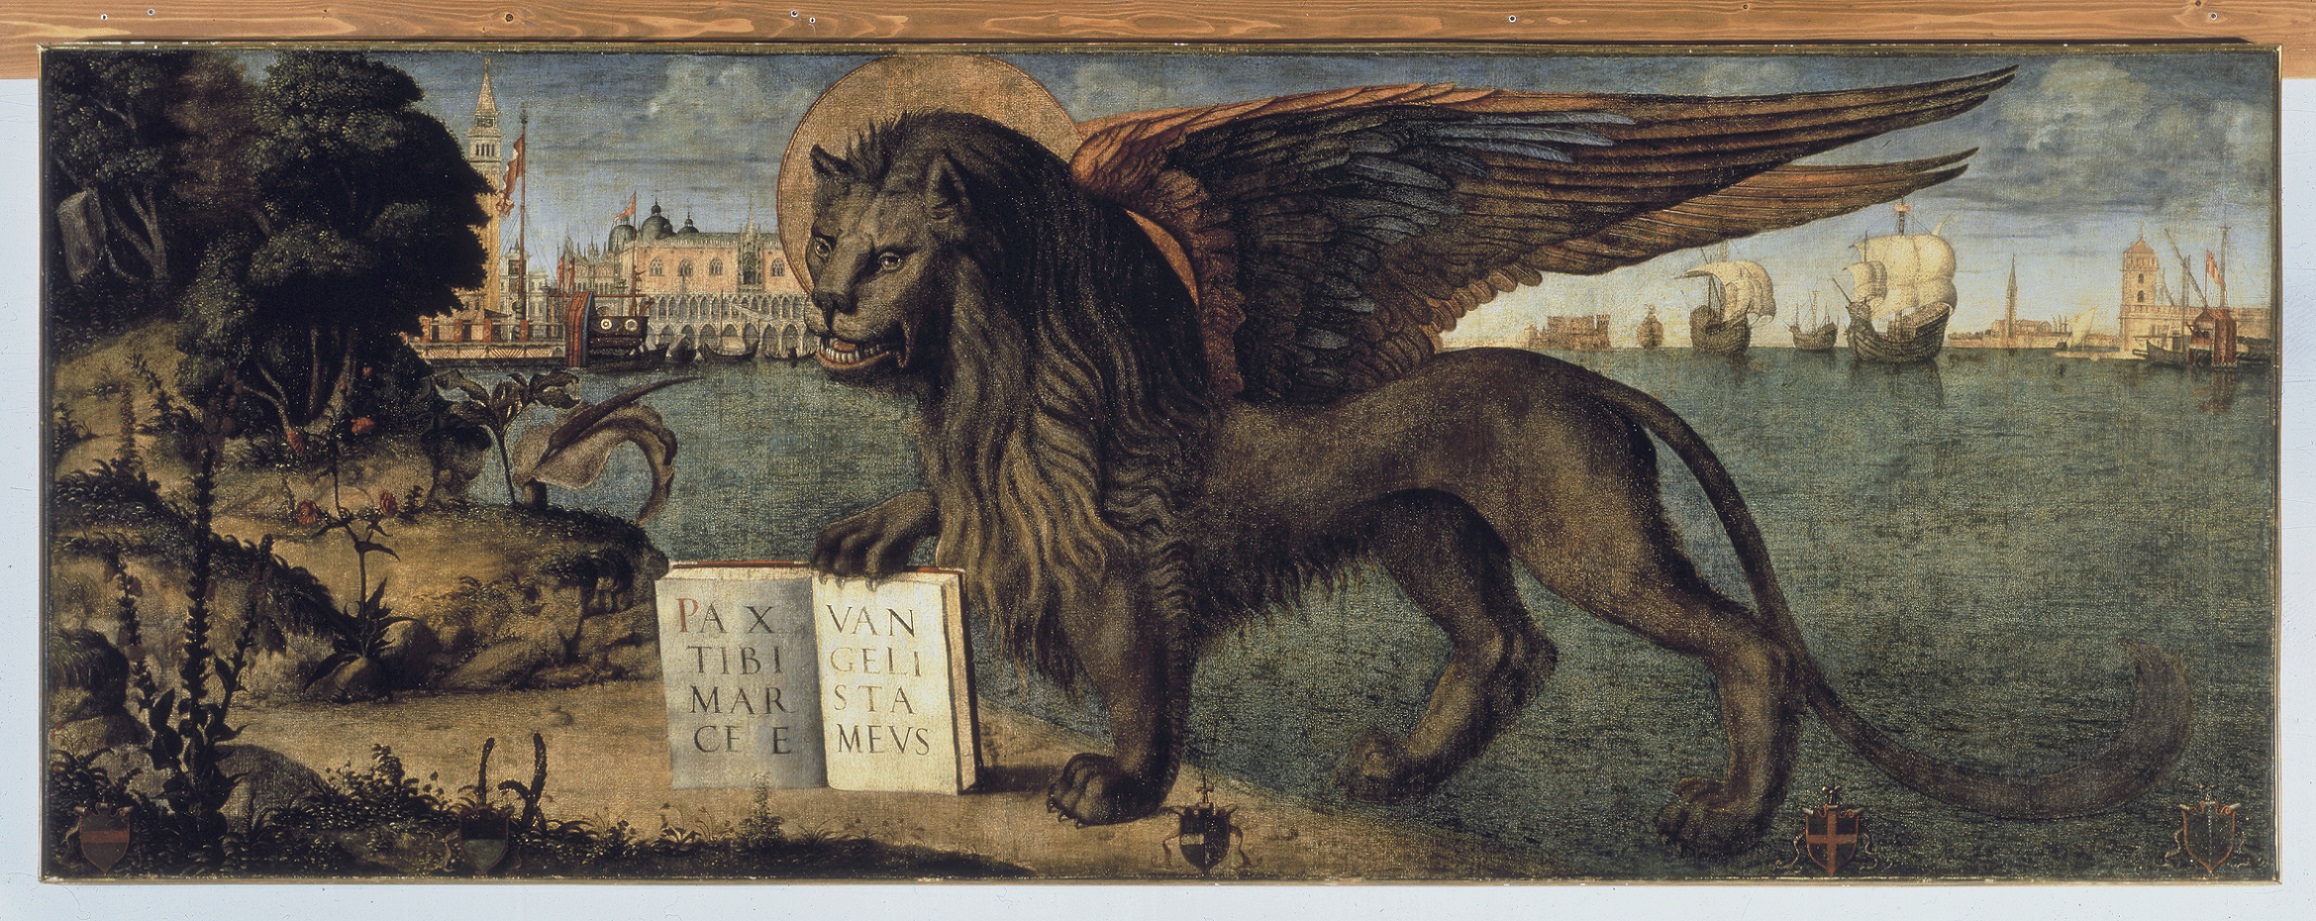 Vittore Carpaccio, Leone marciano, 1516, 138x 367 cm, Palazzo Ducale, Venezia